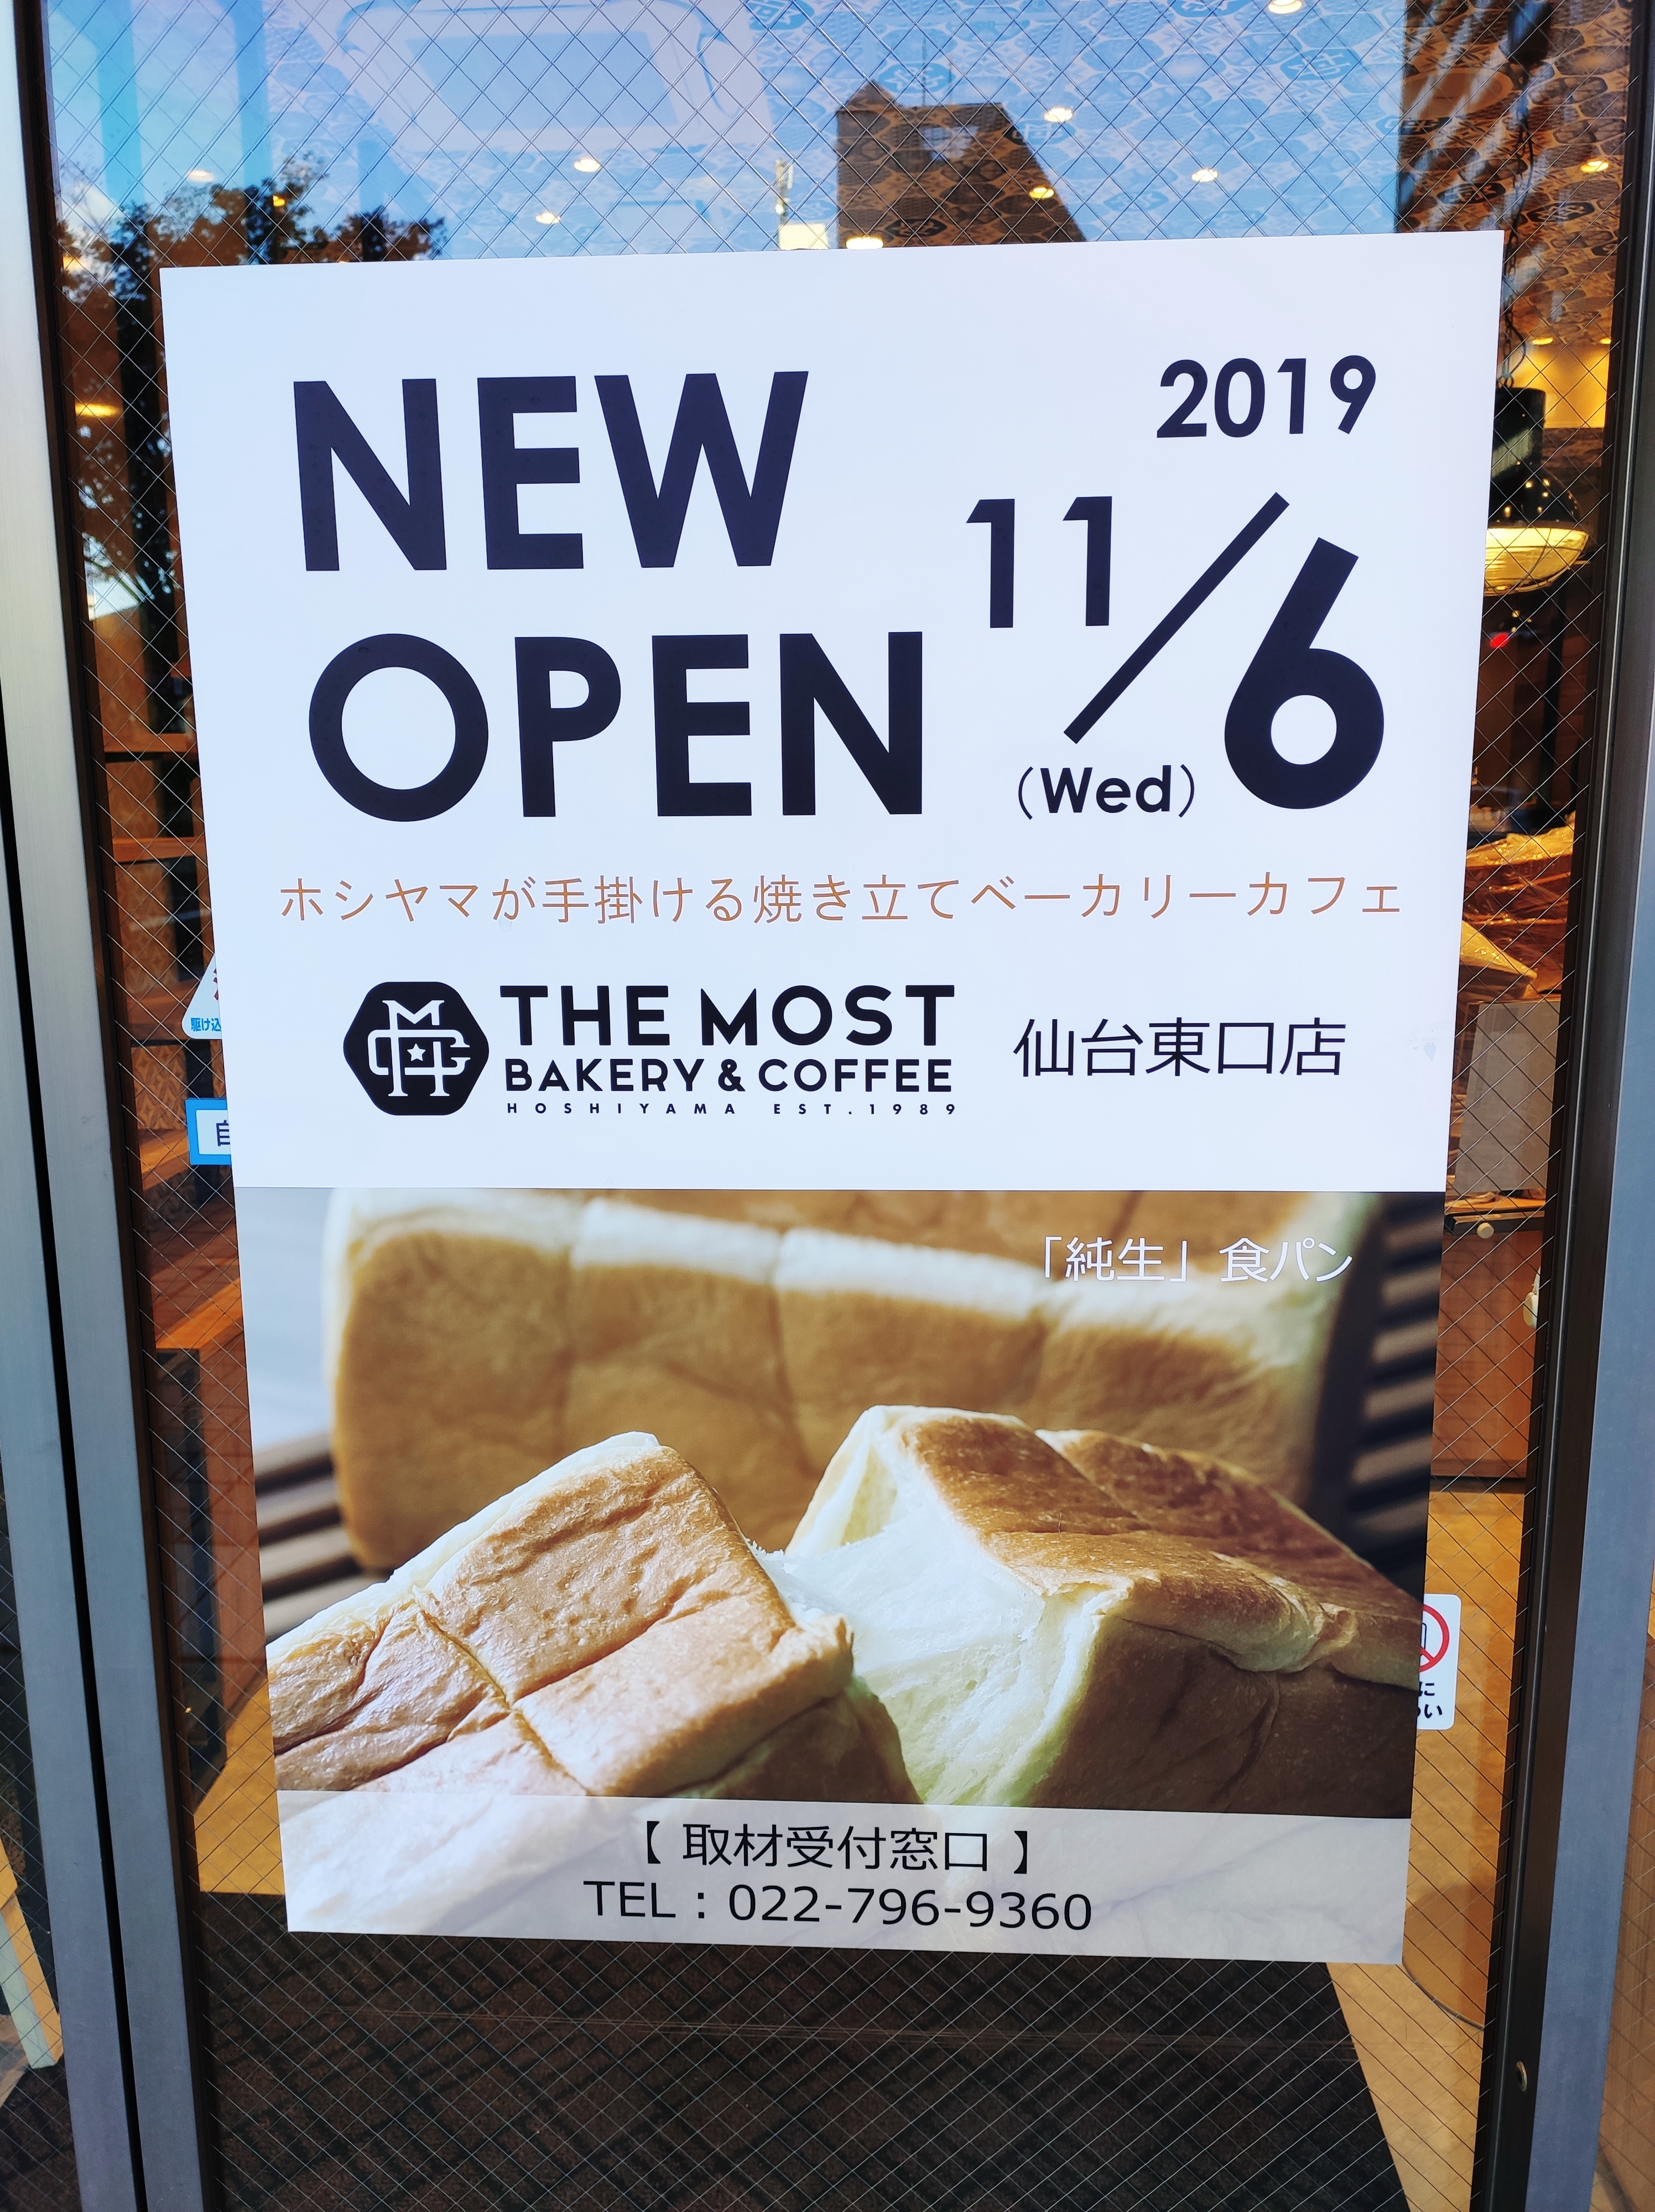 11/6オープン!!仙台駅東口店に新しい高級食パン&カフェのお店「THE MOST BAKERY&COFFEE」が登場！